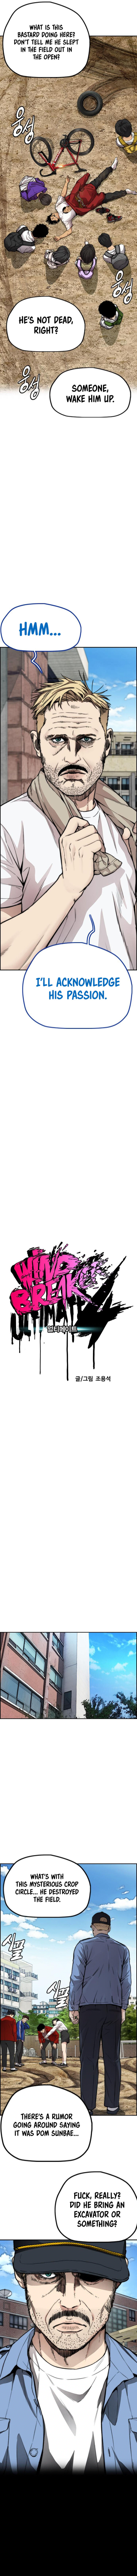 Wind Breaker 419 2